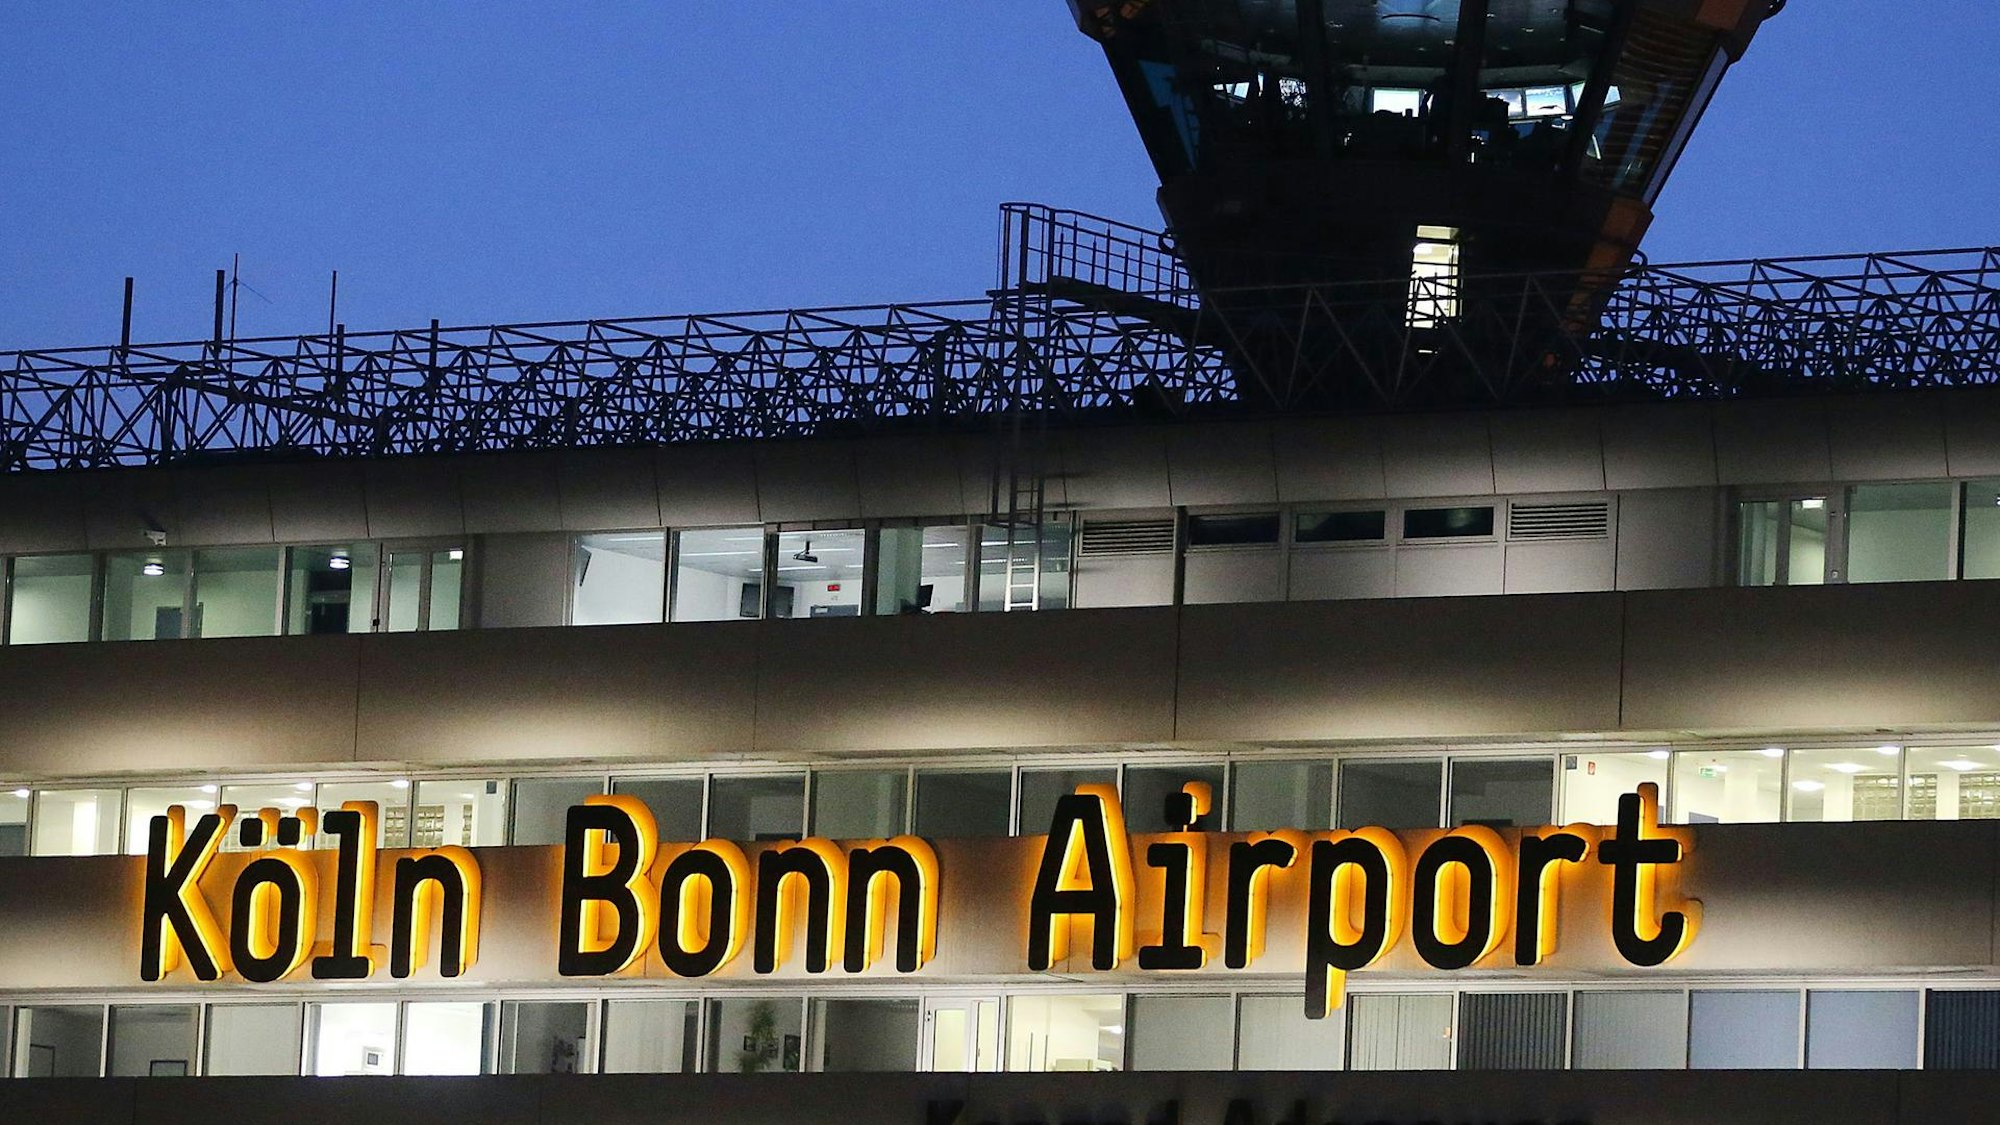 Der schwarz-gelbe Schriftzug "Köln Bonn Airport" an einem Flughafengebäude.